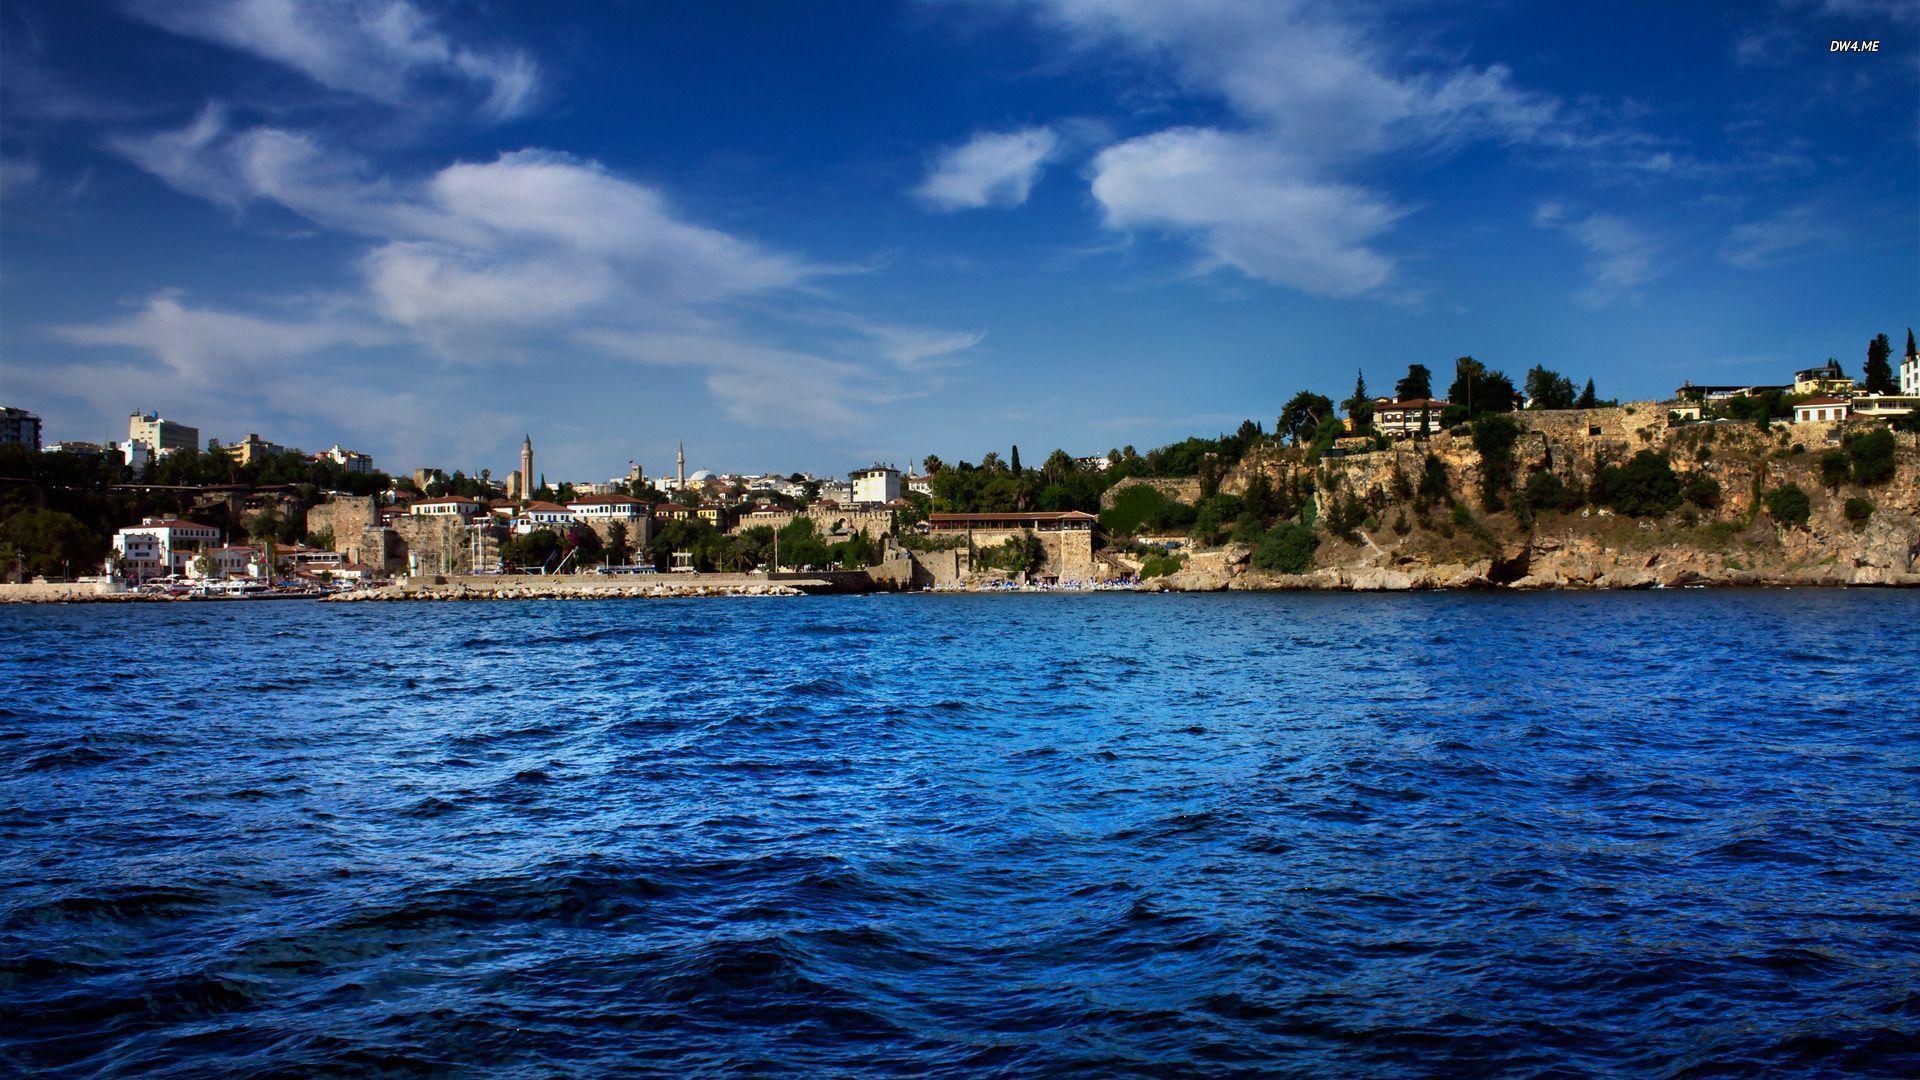 HD Antalya Turkey On The Blue Mediterranean Wallpaper. Download